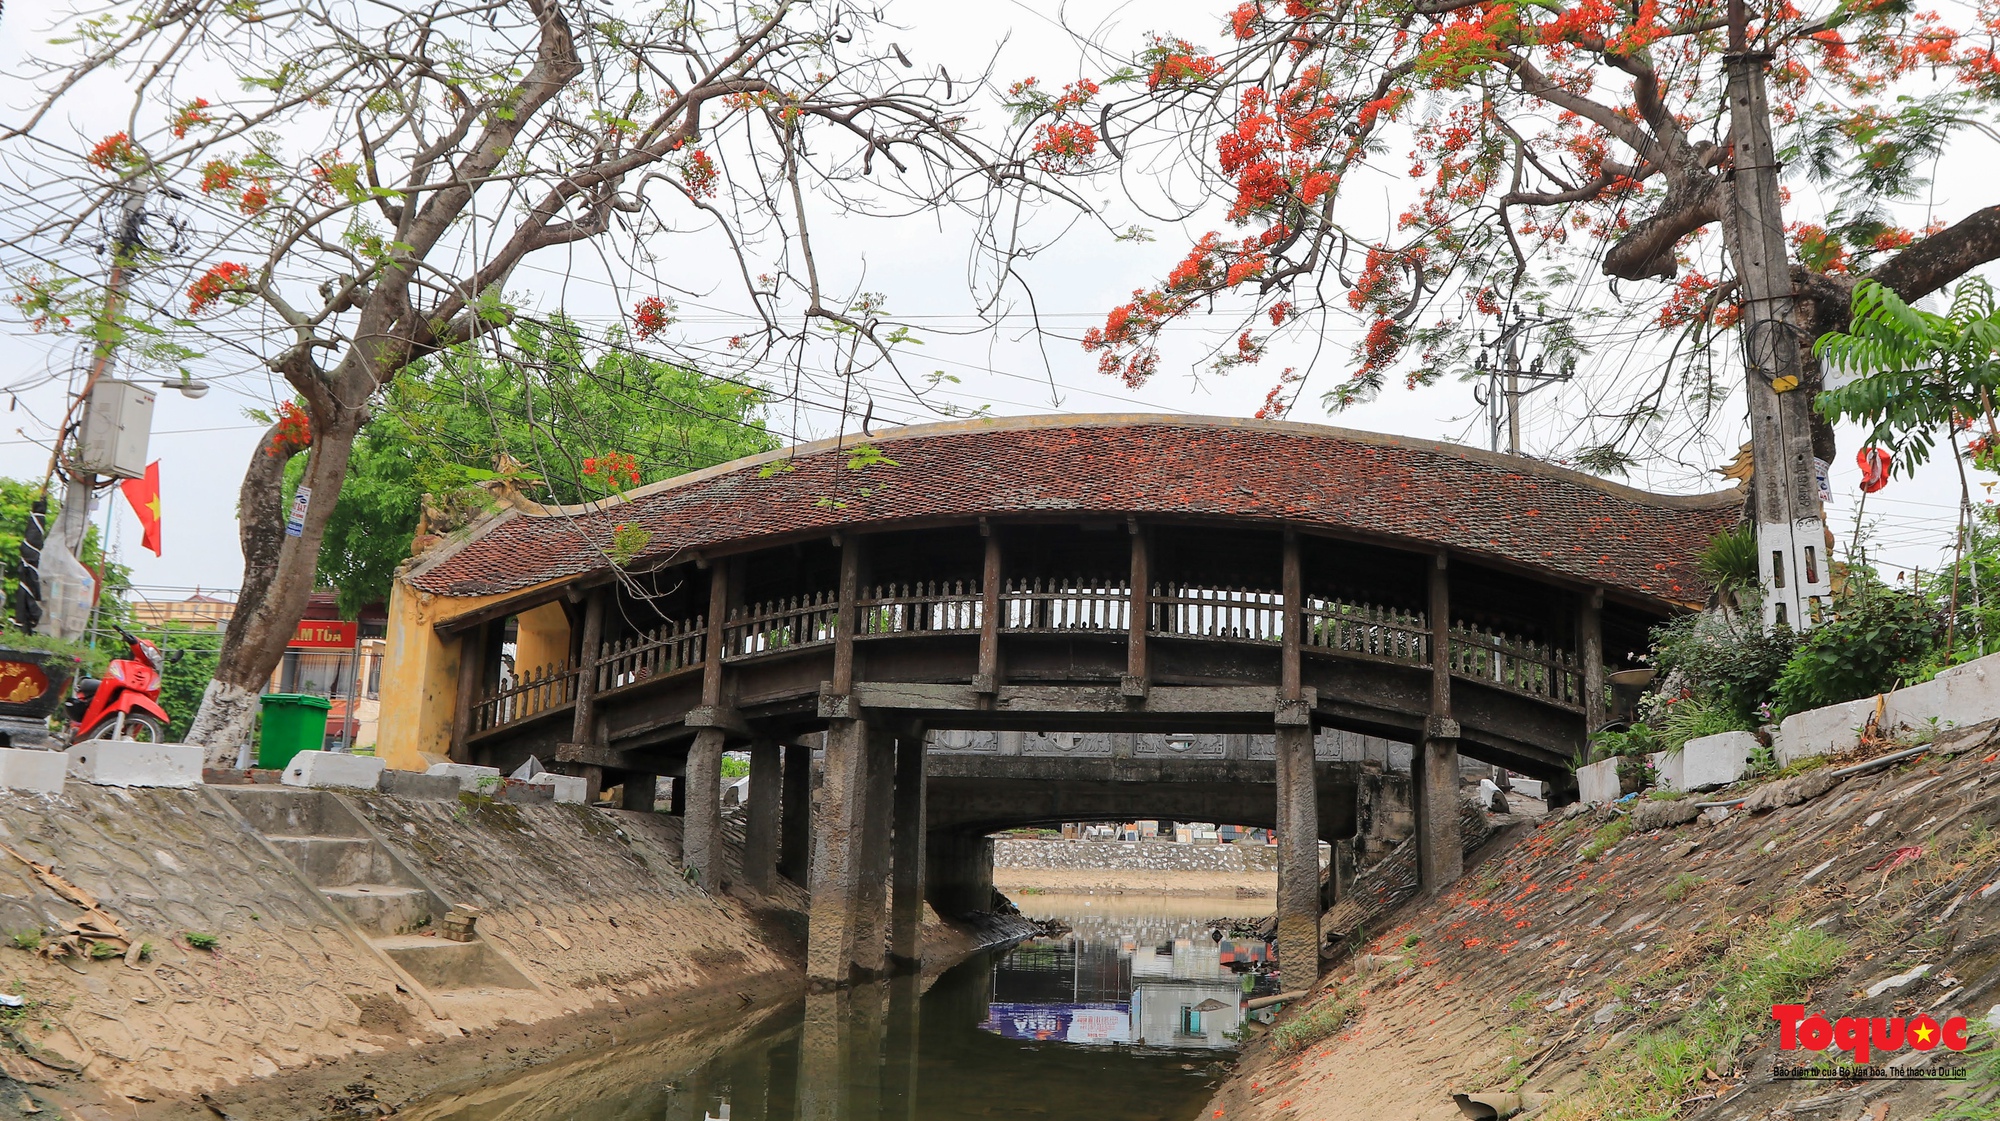 Vẻ đẹp của cây cầu ngói trên 500 tuổi tại Nam Định - Ảnh 10.